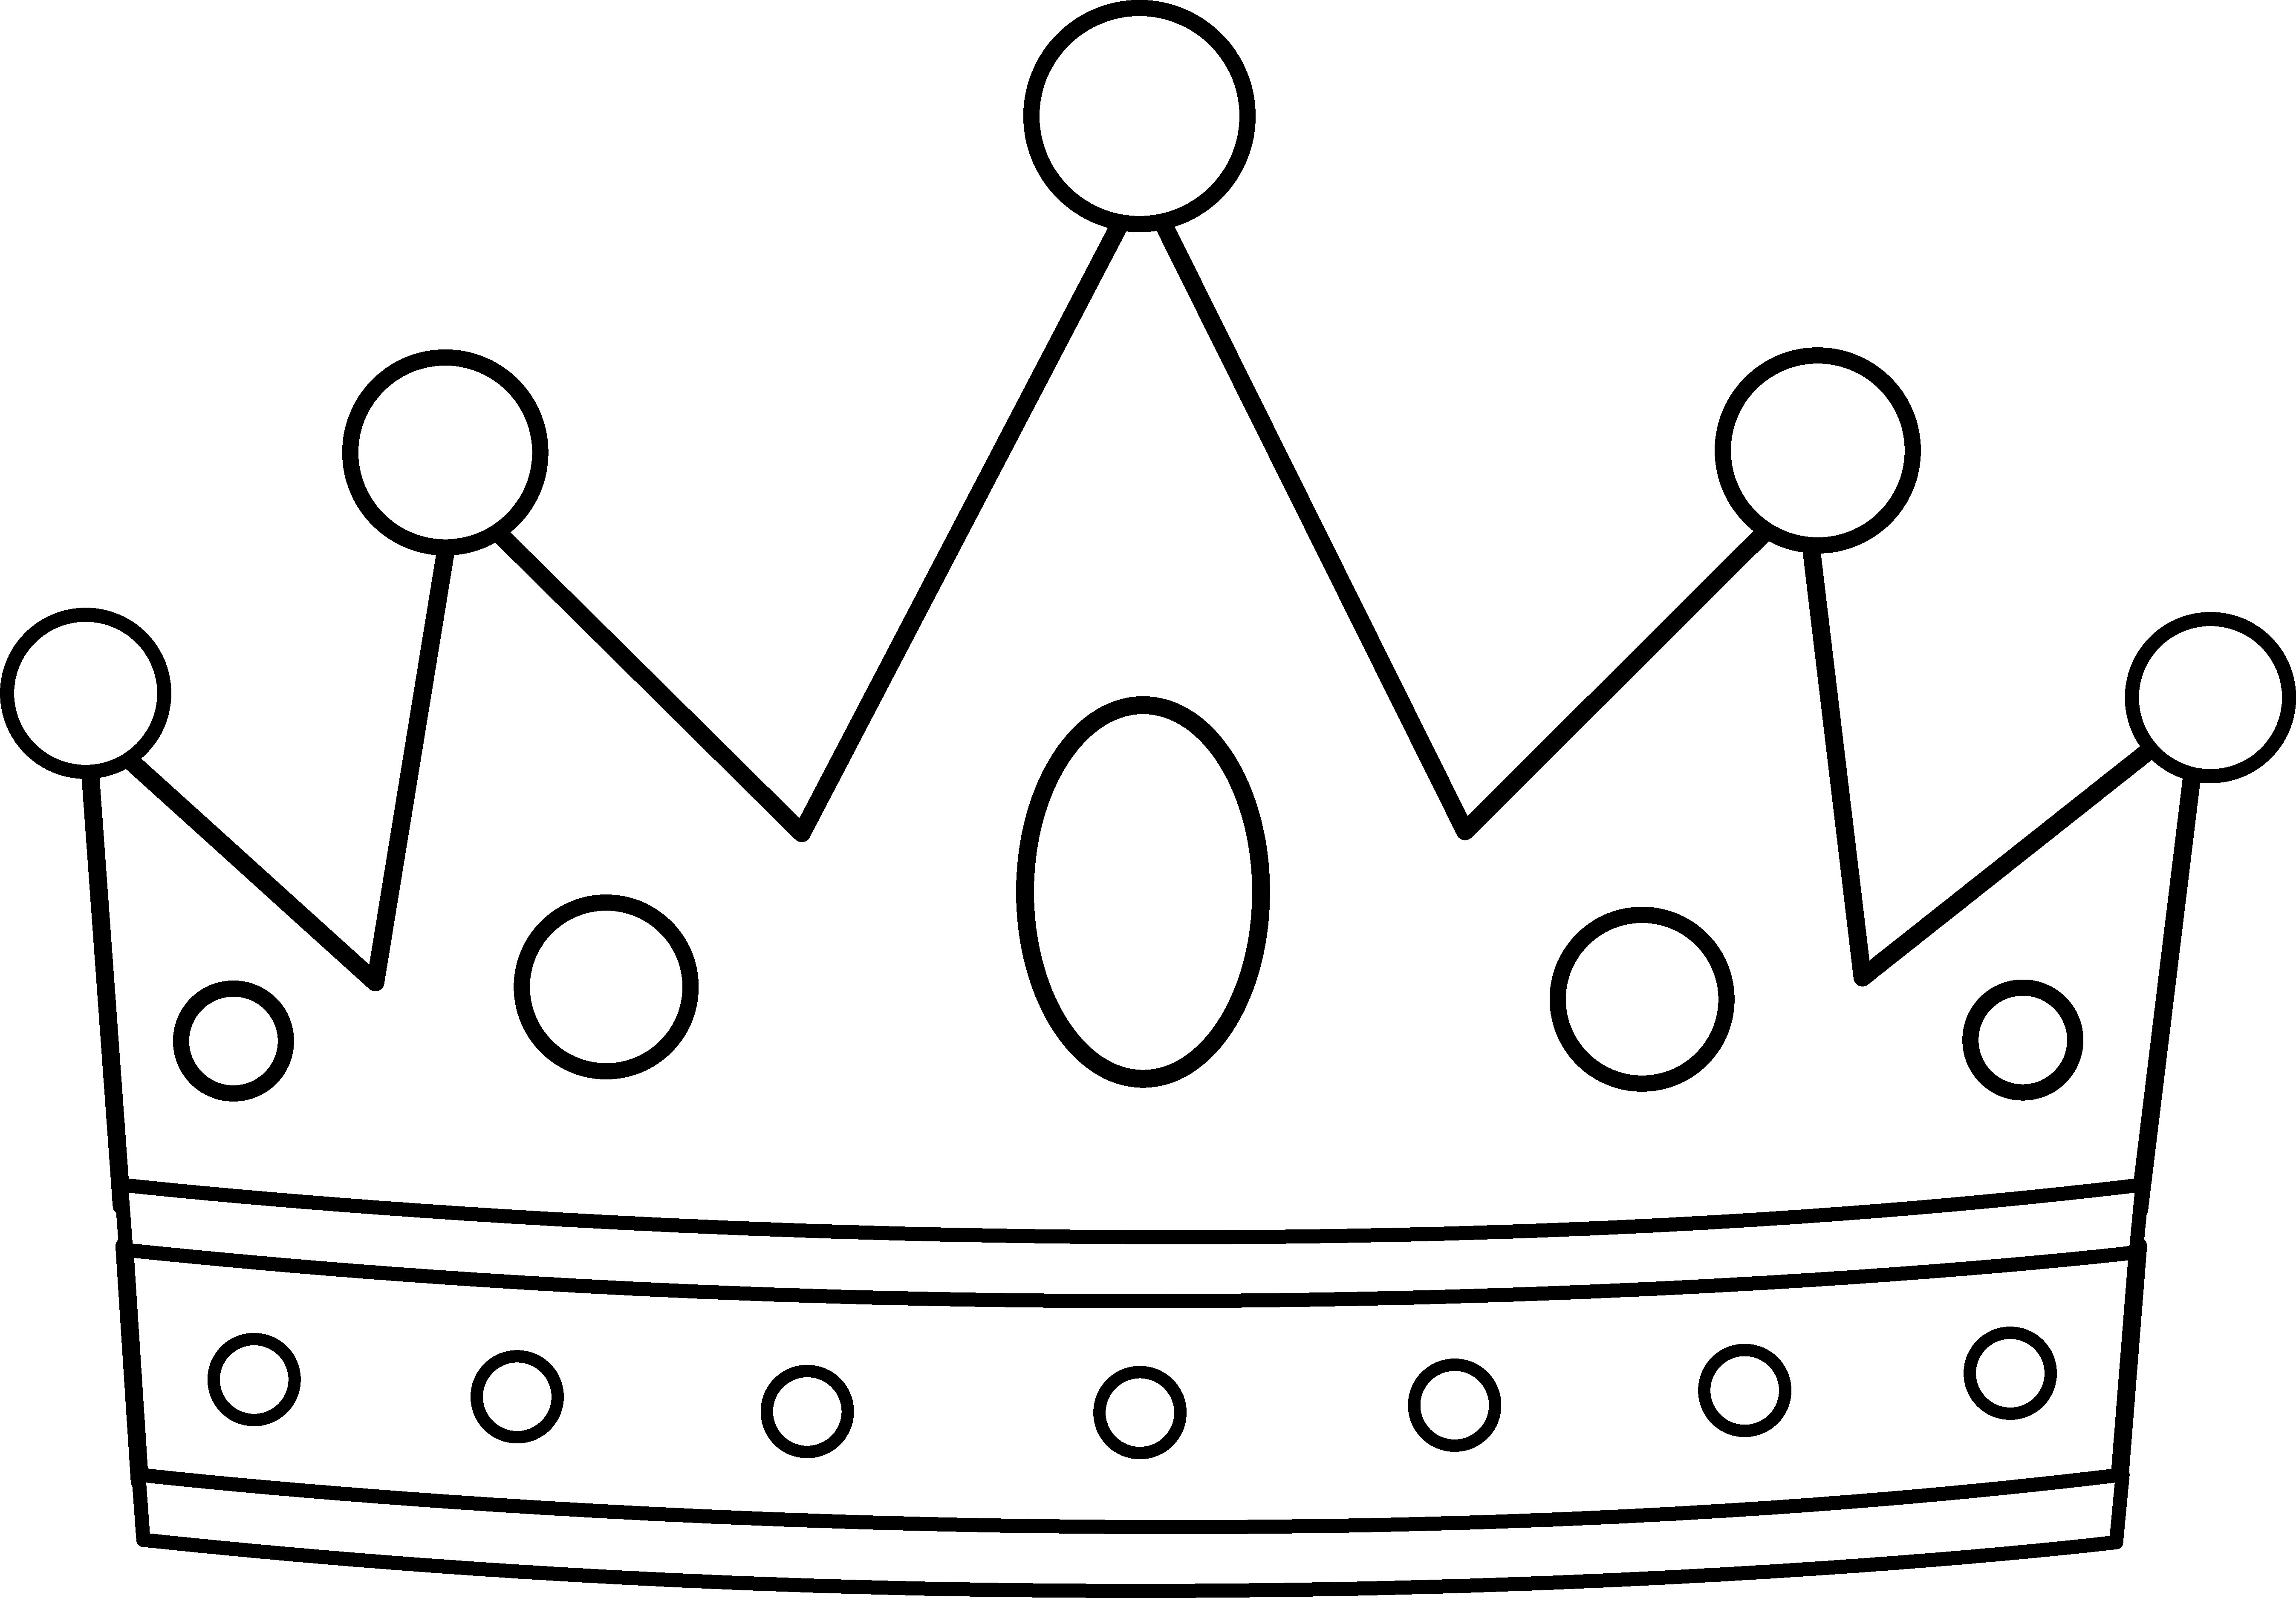 Crowns clipart unisex. Royal crown line art